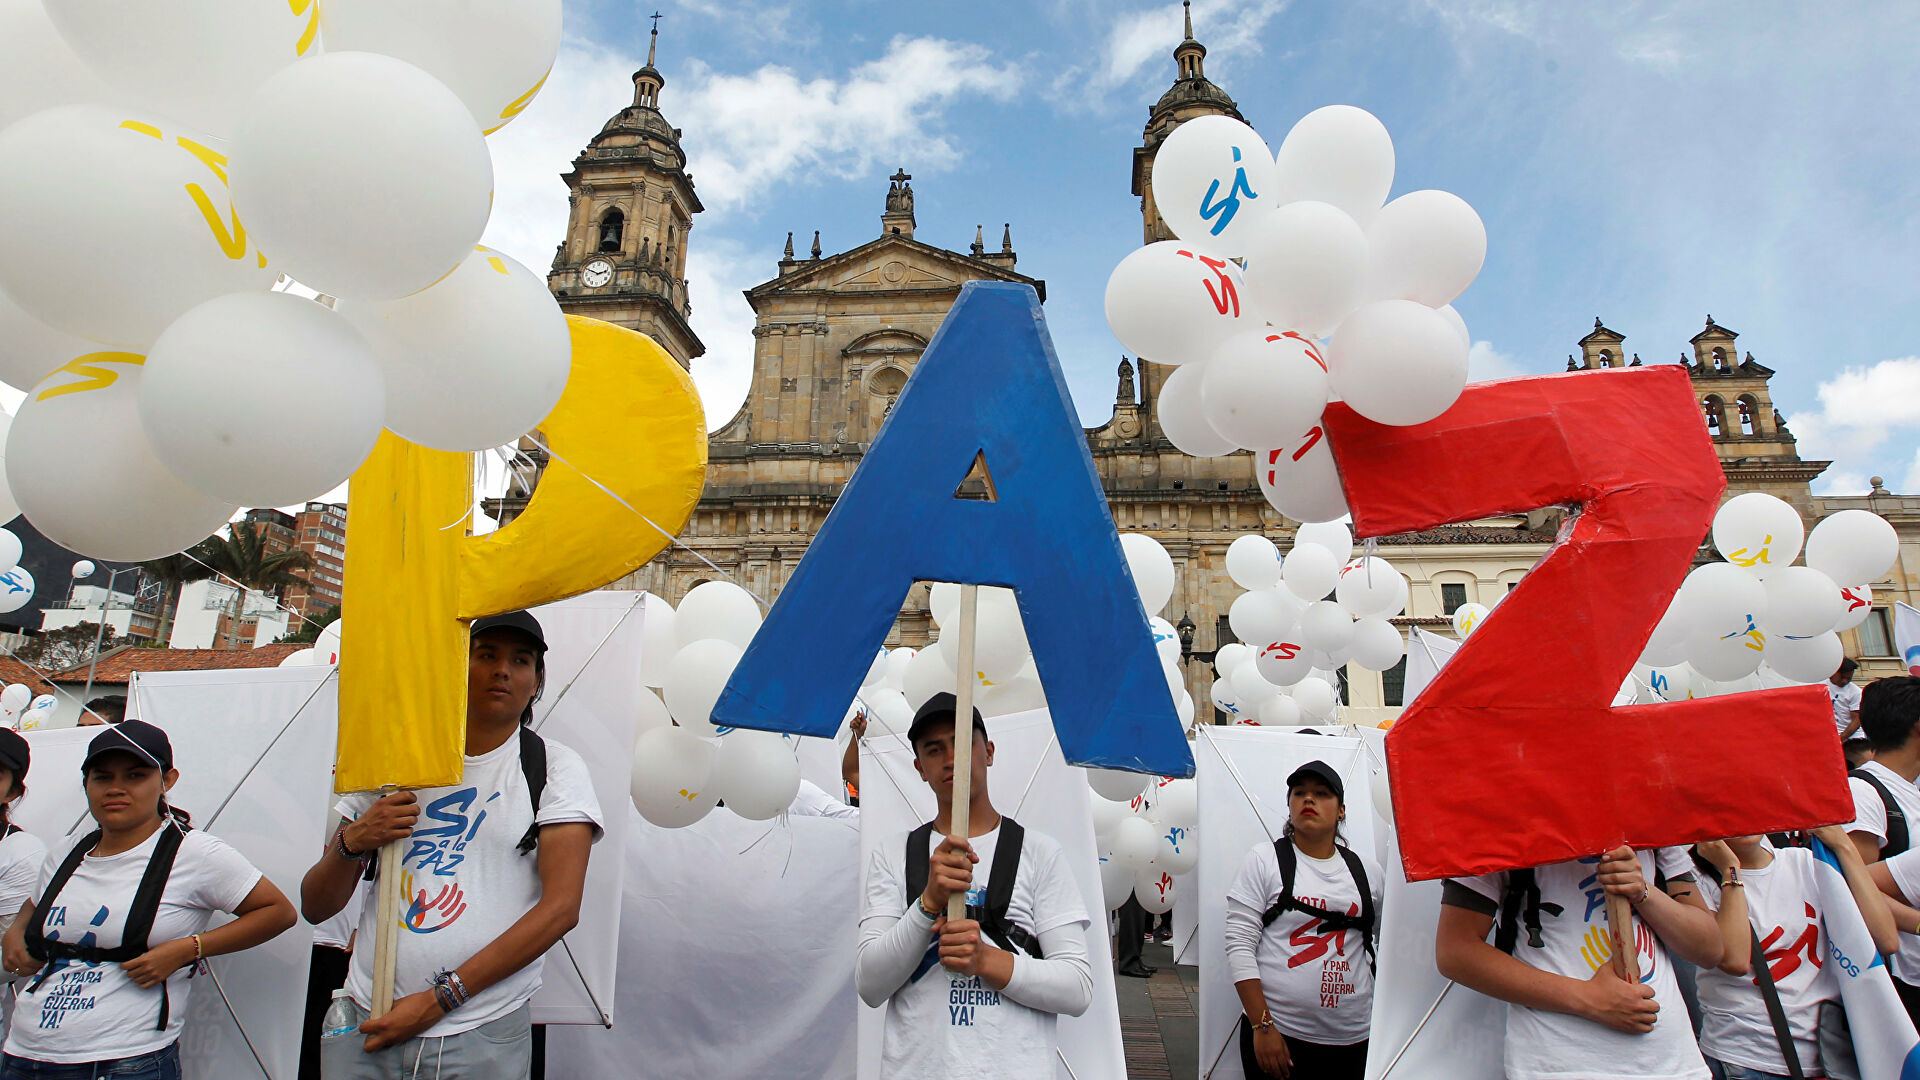 Crece la muerte: reportan asesinato de firmante de la paz número 11 en Colombia en el presente año